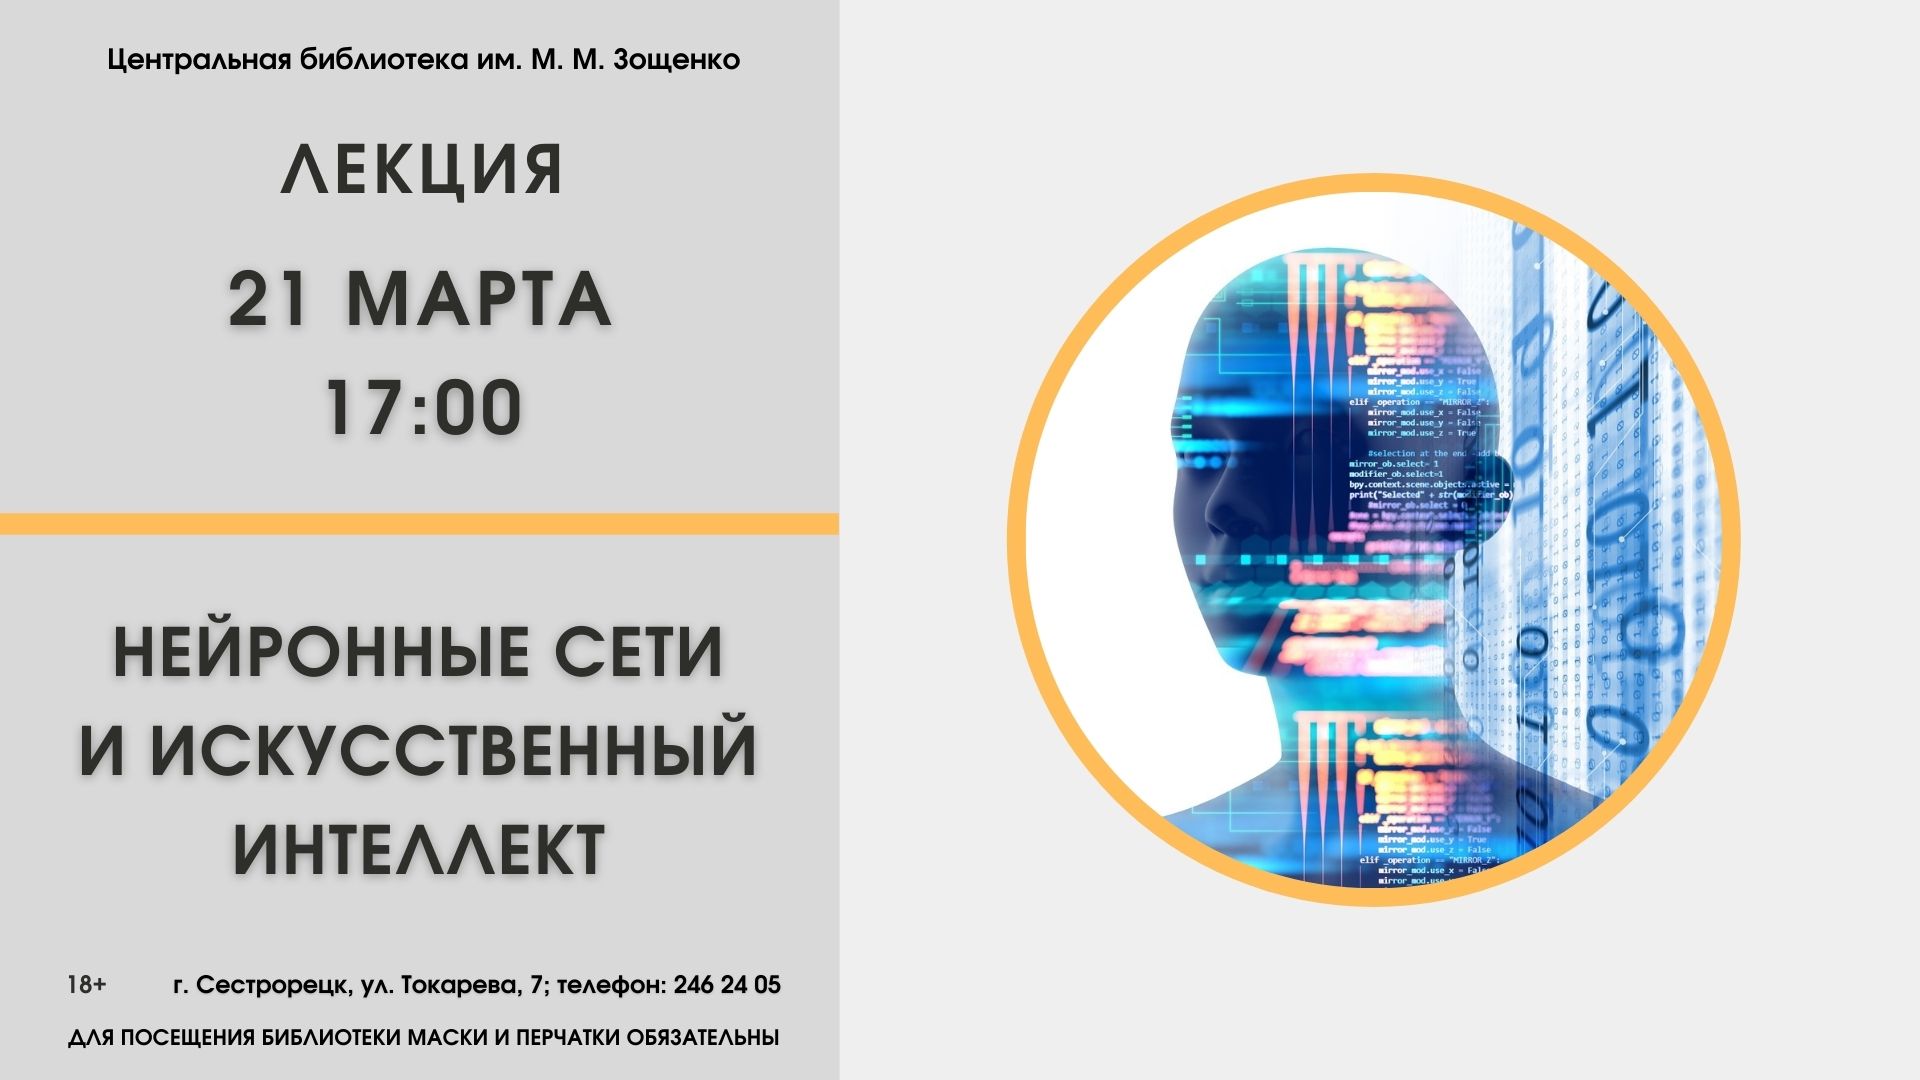 лекция "Нейронные сети и искусственный интеллект" 21 марта 17:00